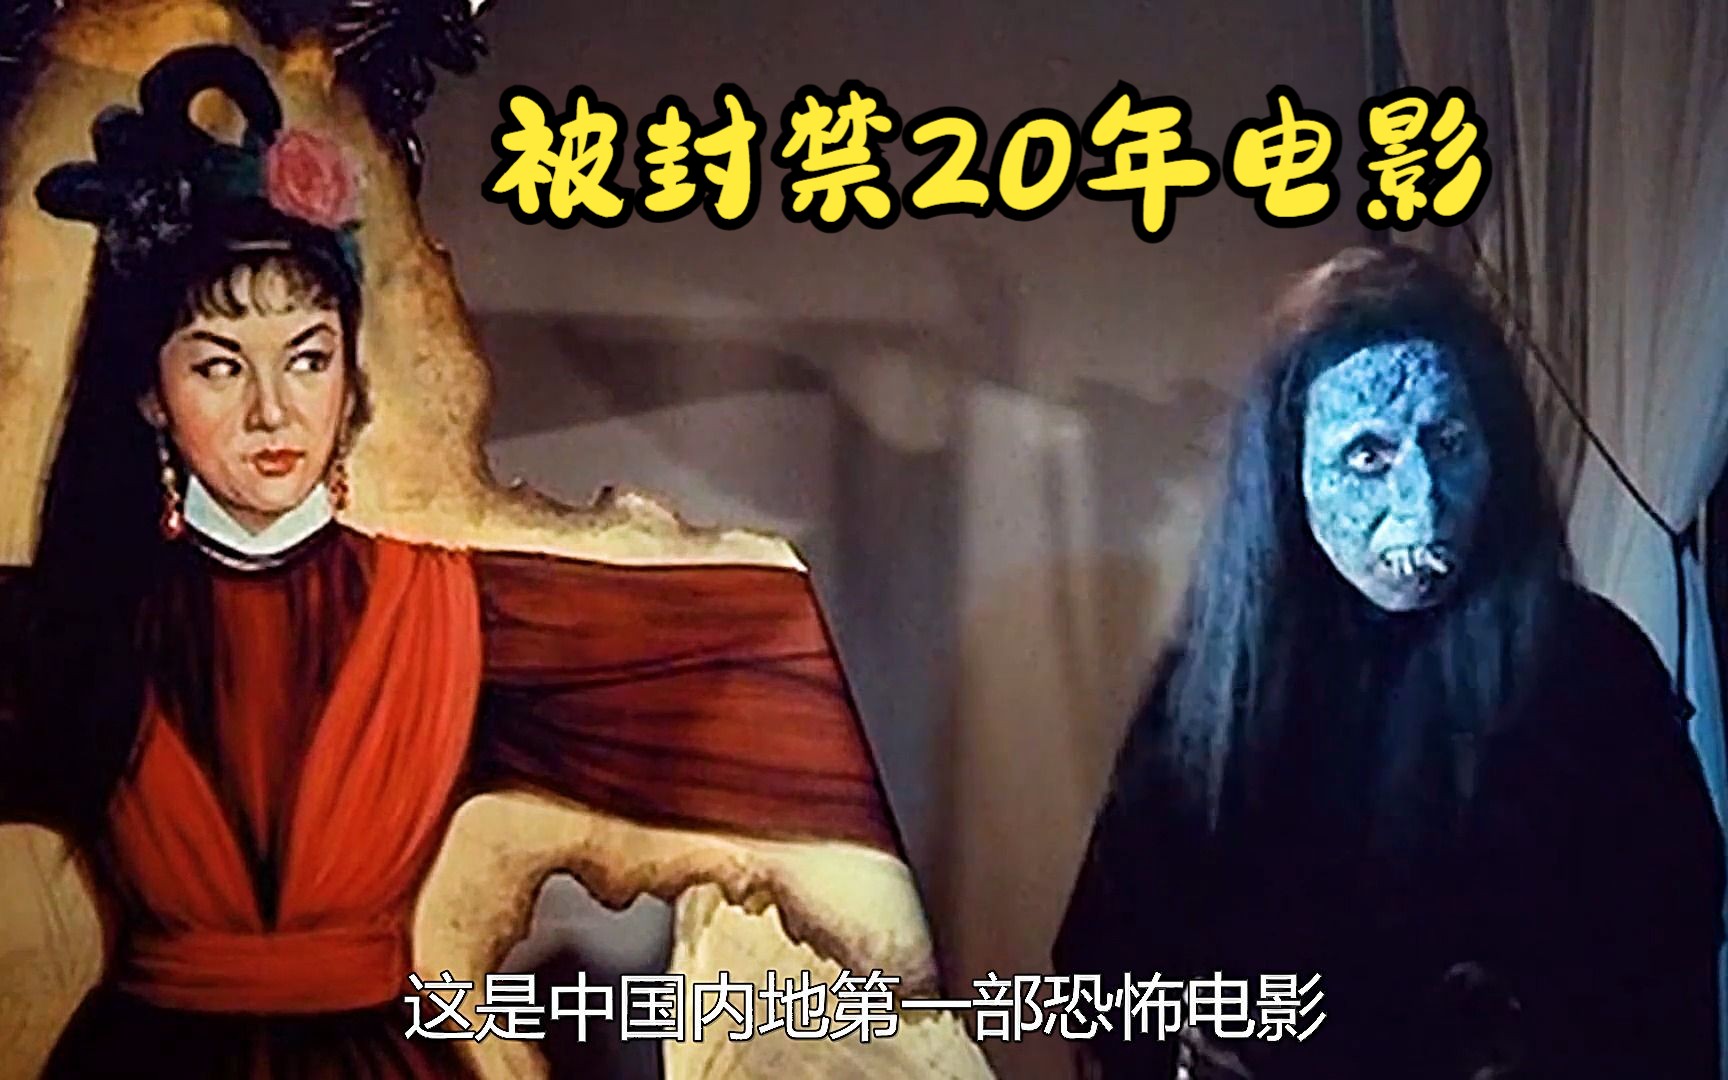 中国第一部鬼片,封禁20的画皮:老电影